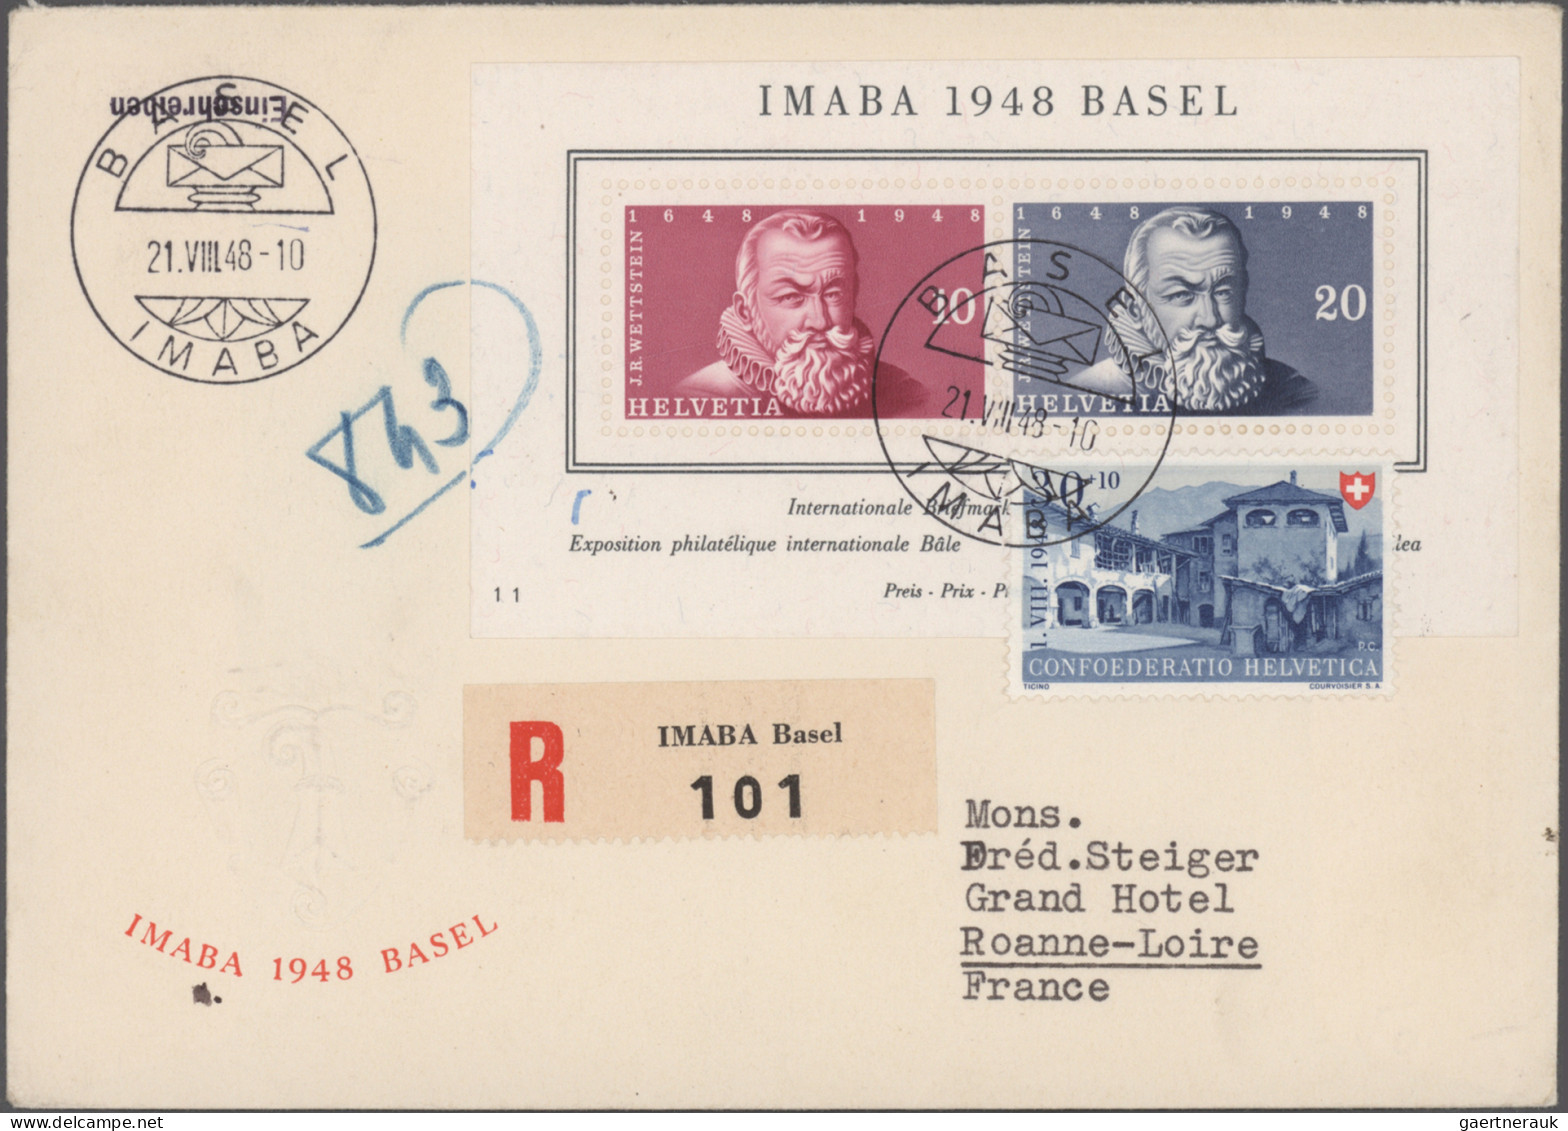 Schweiz: 1937/1959, saubere Sammlung von 34 Belegen, meist FDCs, mit ausschließl